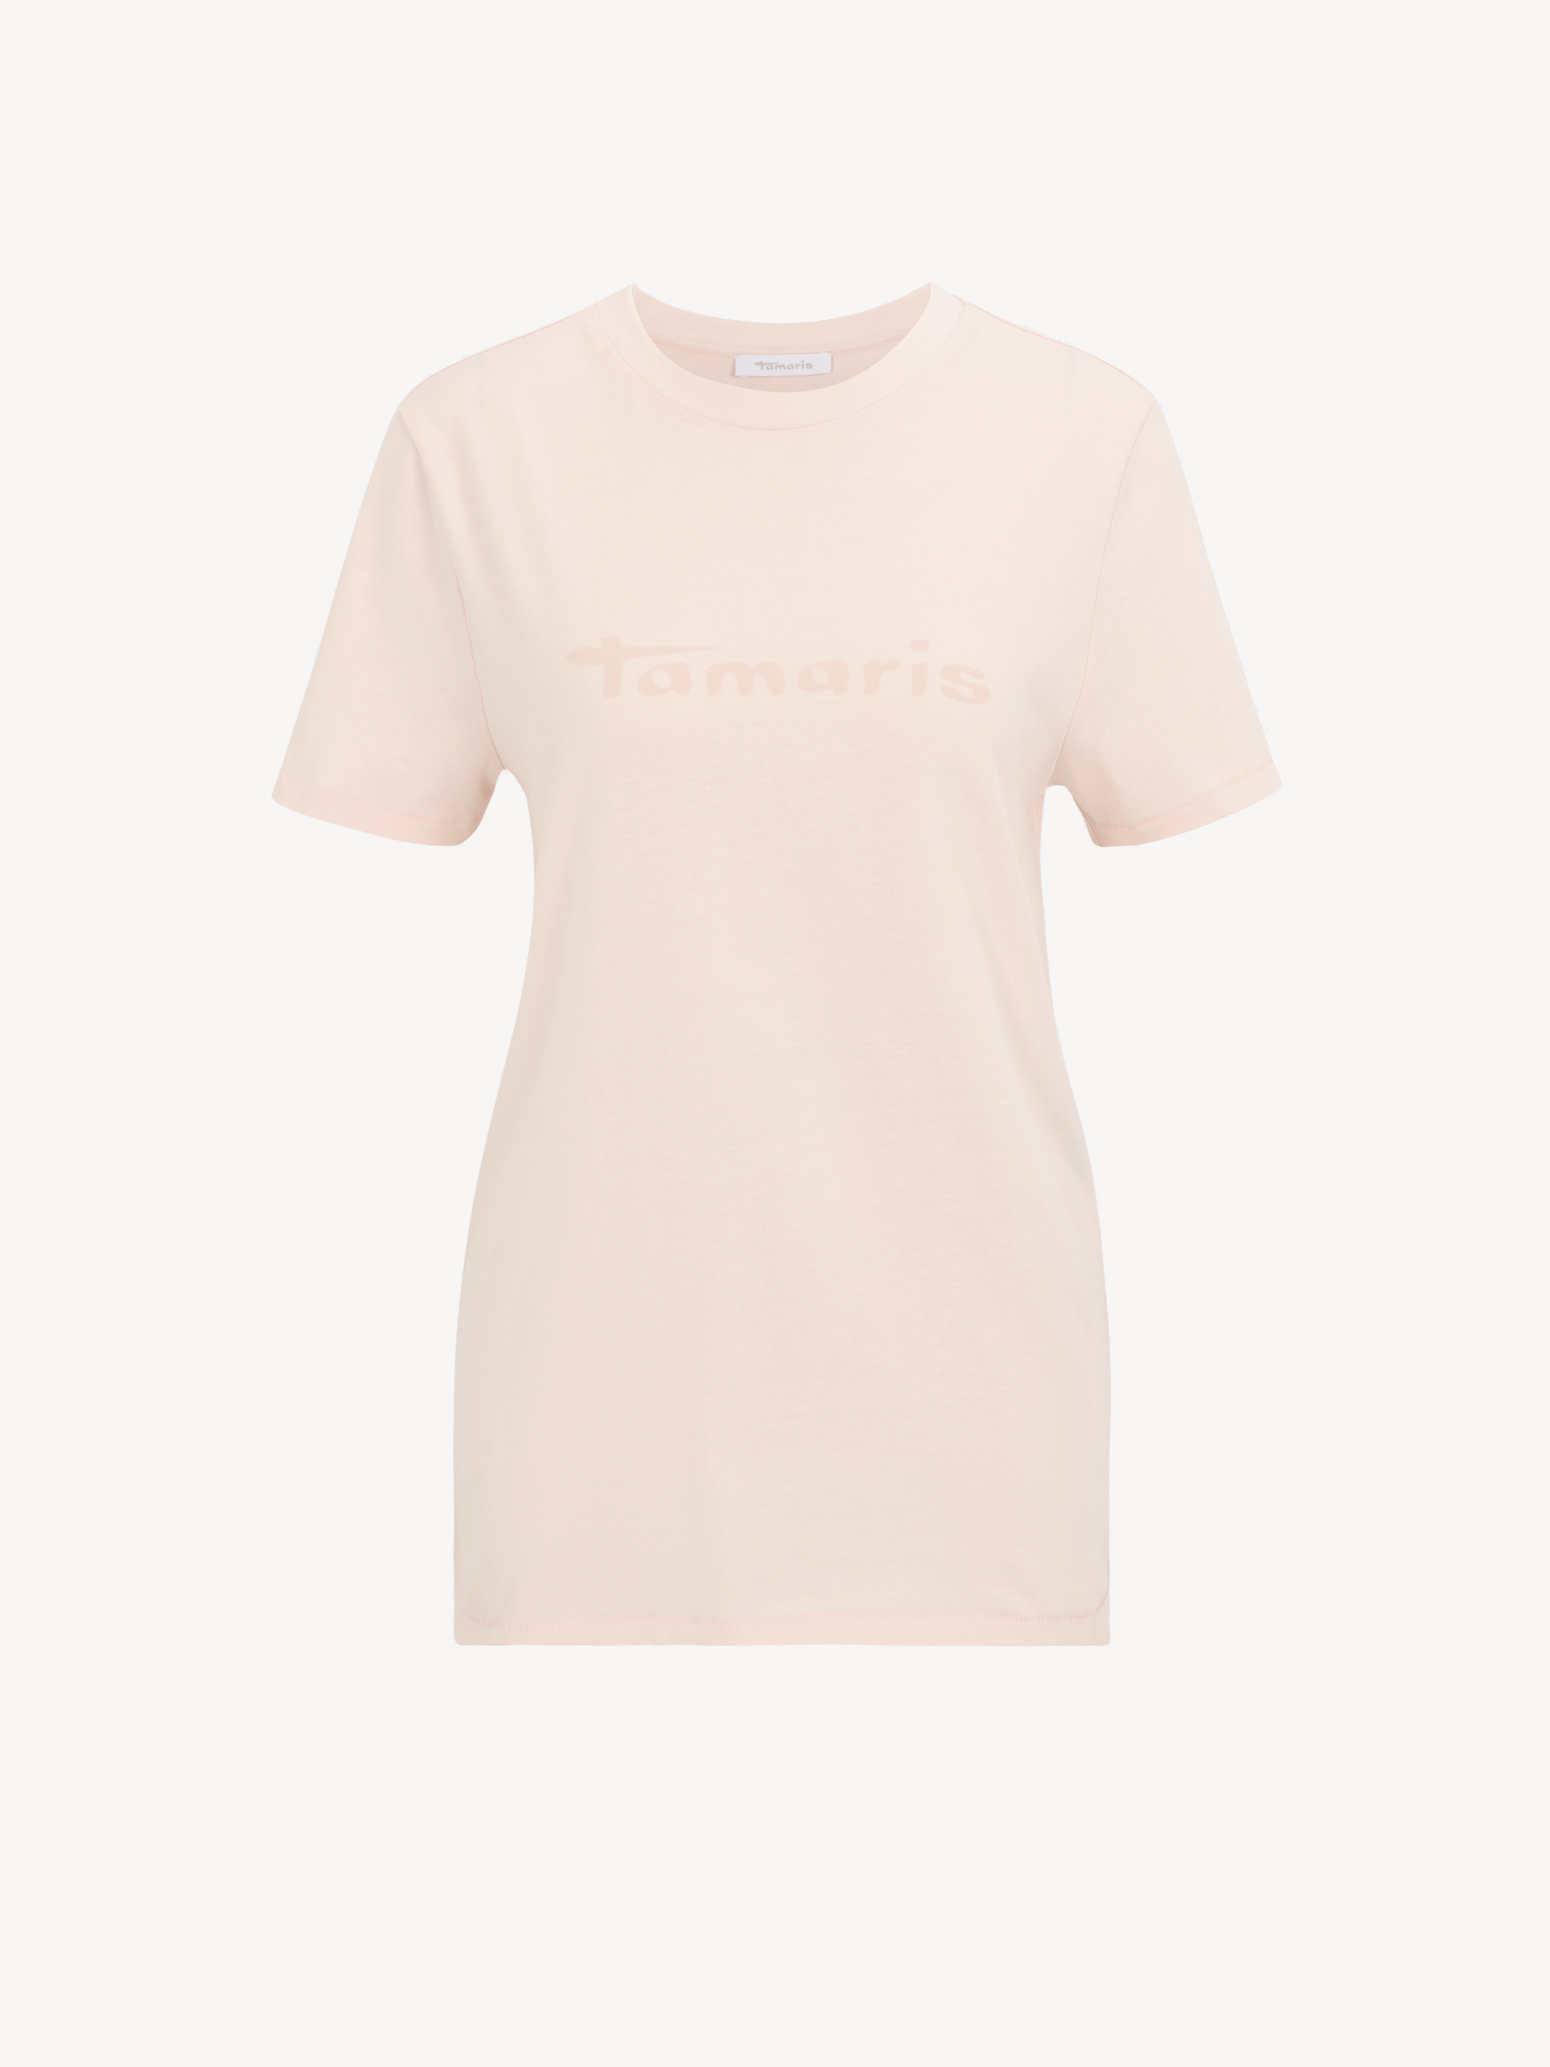 Tamaris now! & Tops Shirts Buy online